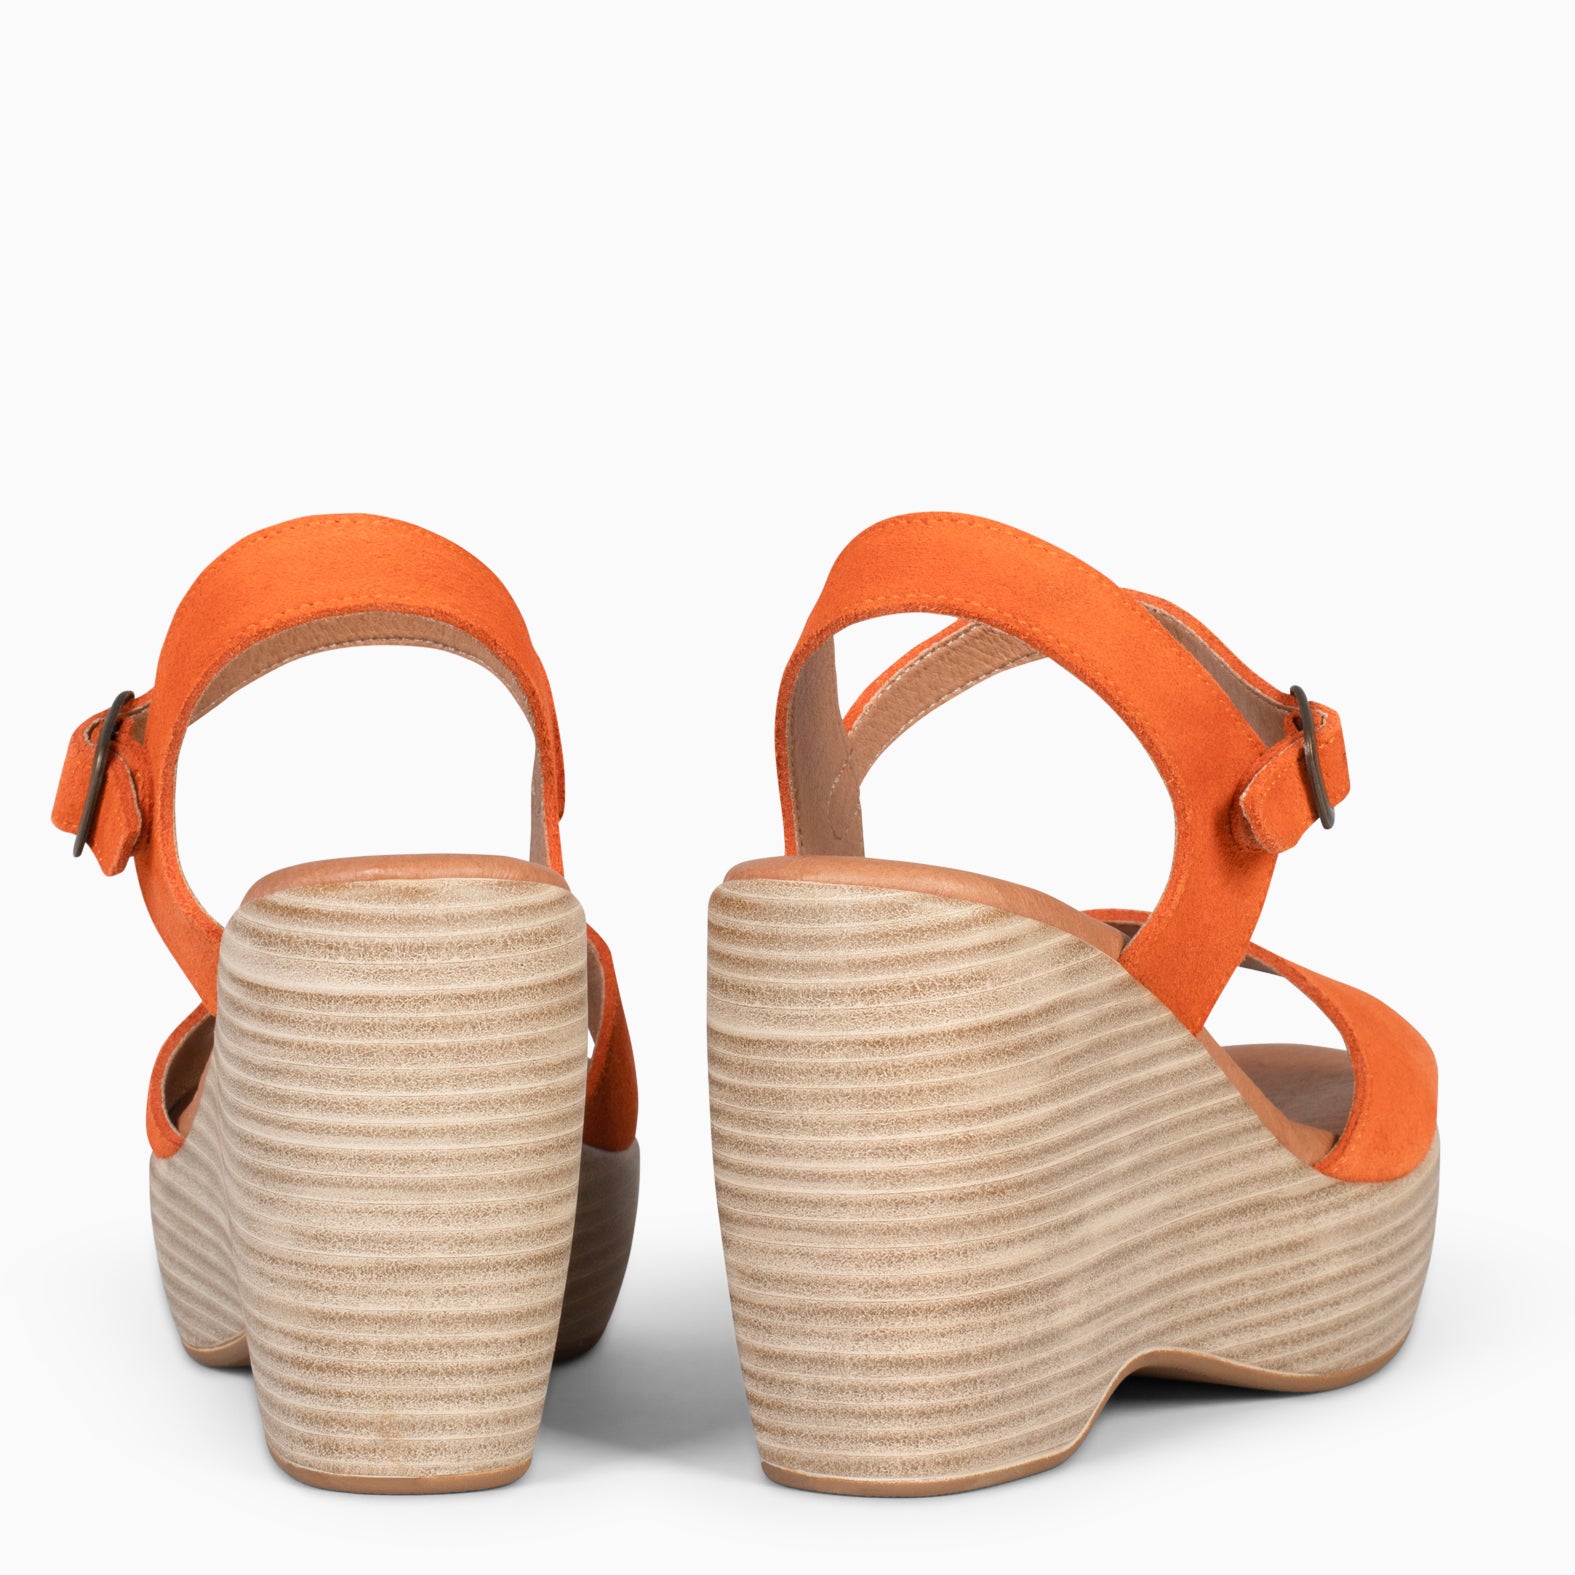 SIDNEY – ORANGE wedge sandals